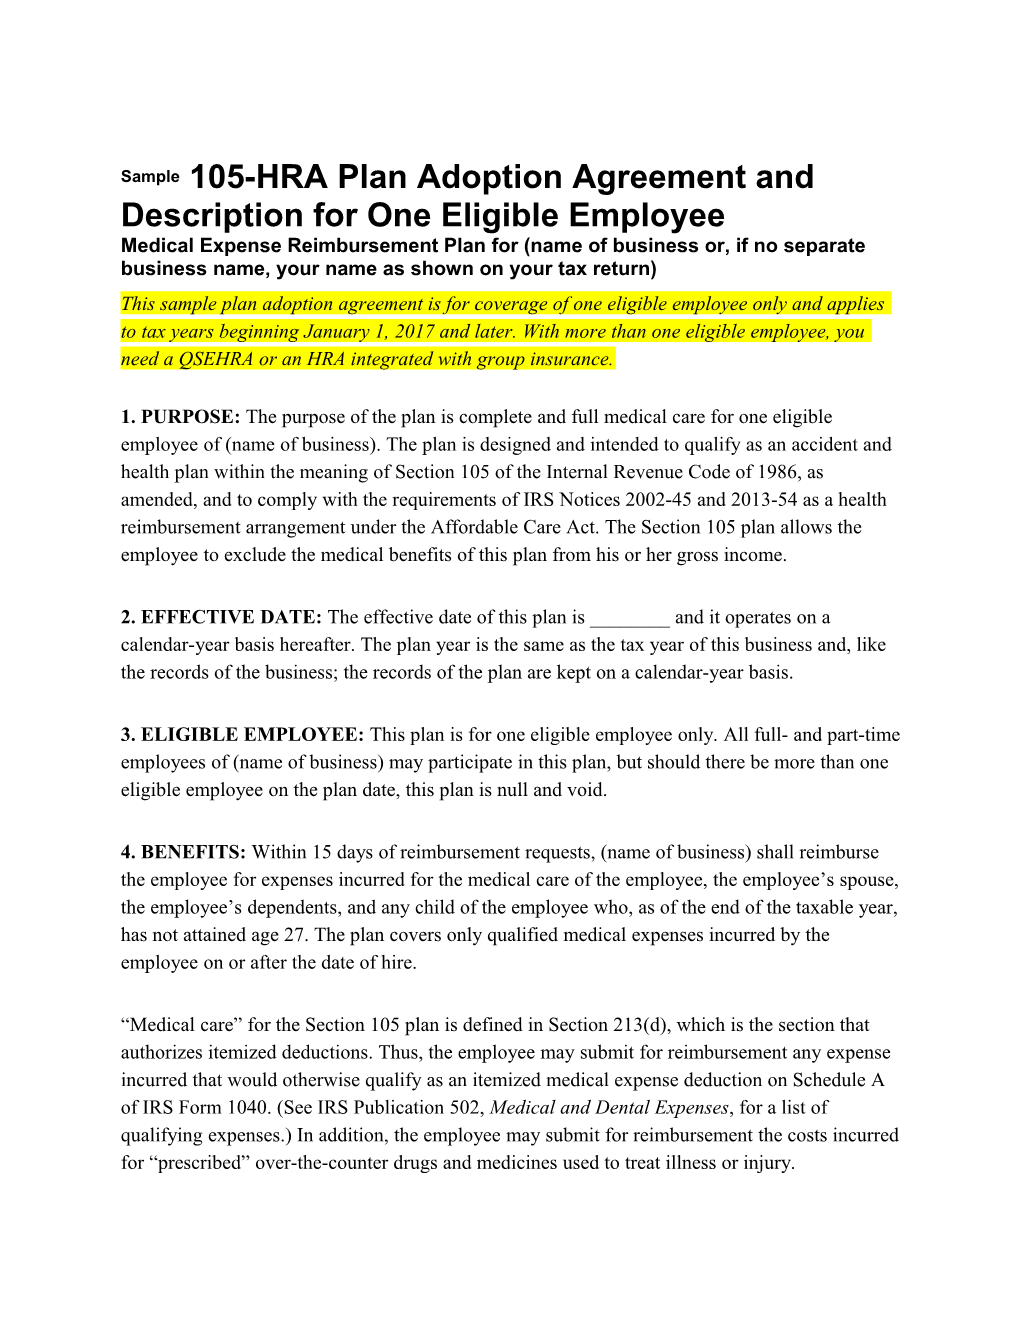 Sample Plan Adoption Agreement